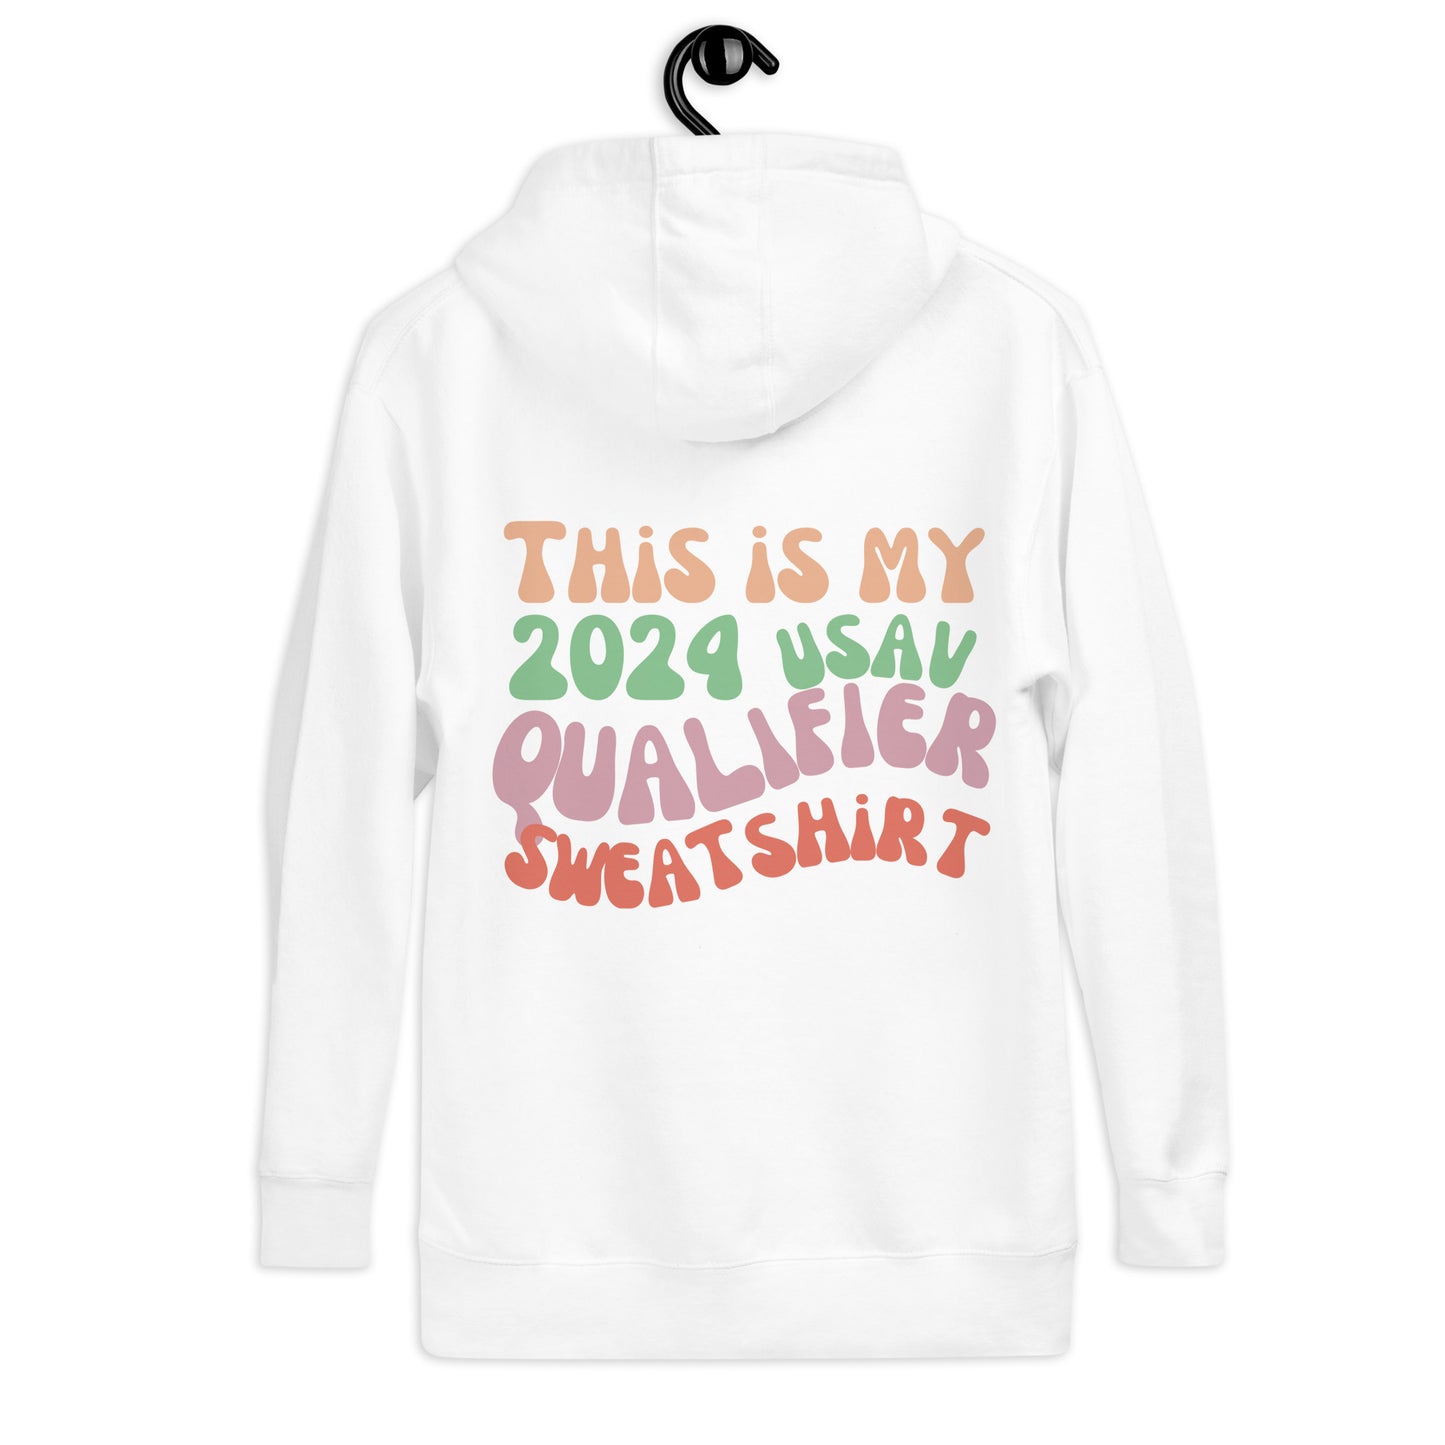 This is my Qualifier Sweatshirt (MEQ/NEQ/Lonestar) Unisex Hoodie